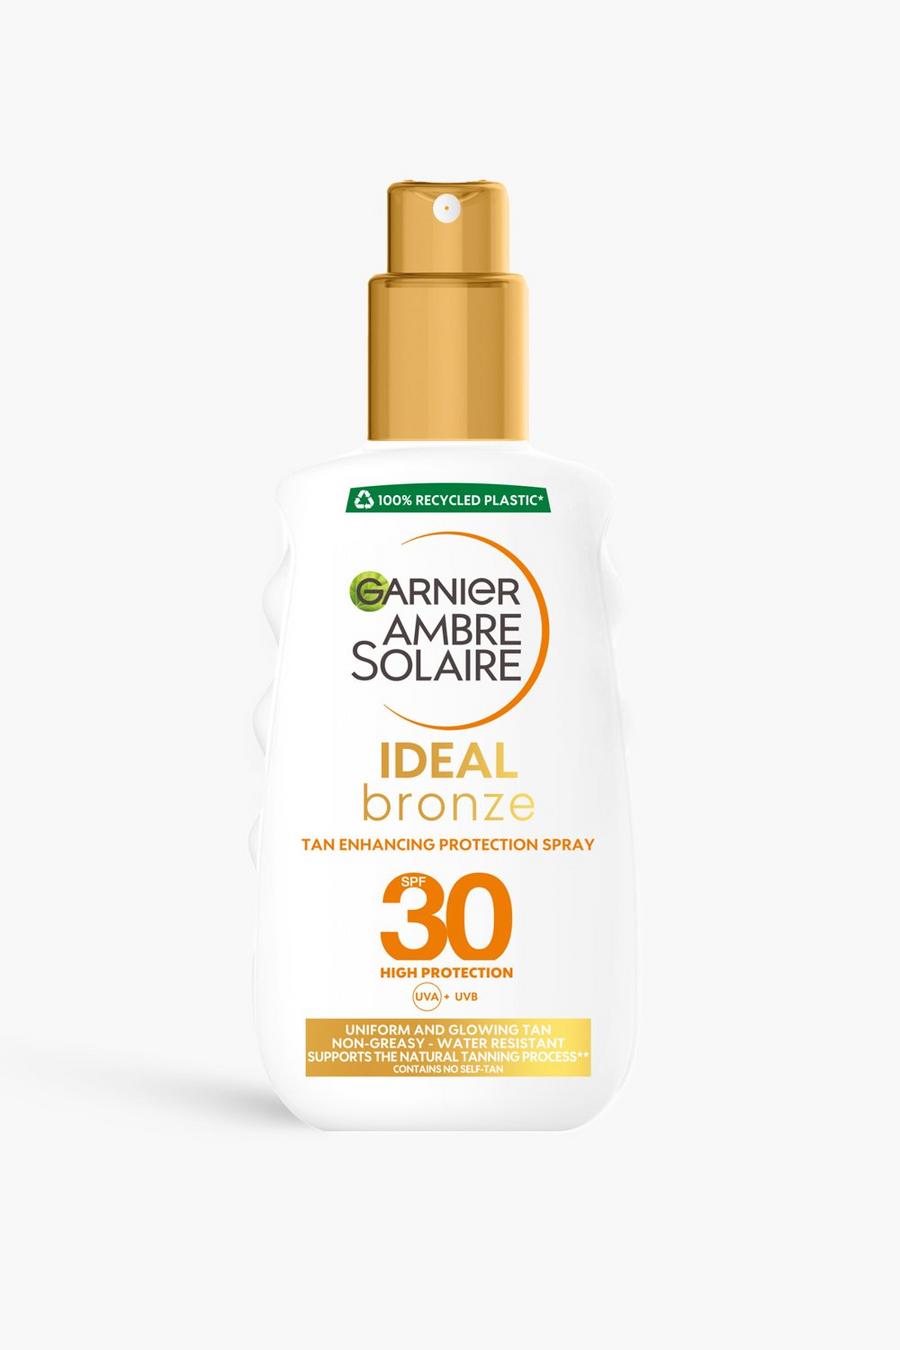 White Garnier Ambre Solaire Ideal Bronze Protective Sun Cream Spray SPF30 UVA & UVB Protection, 200ml (SAVE 32%)